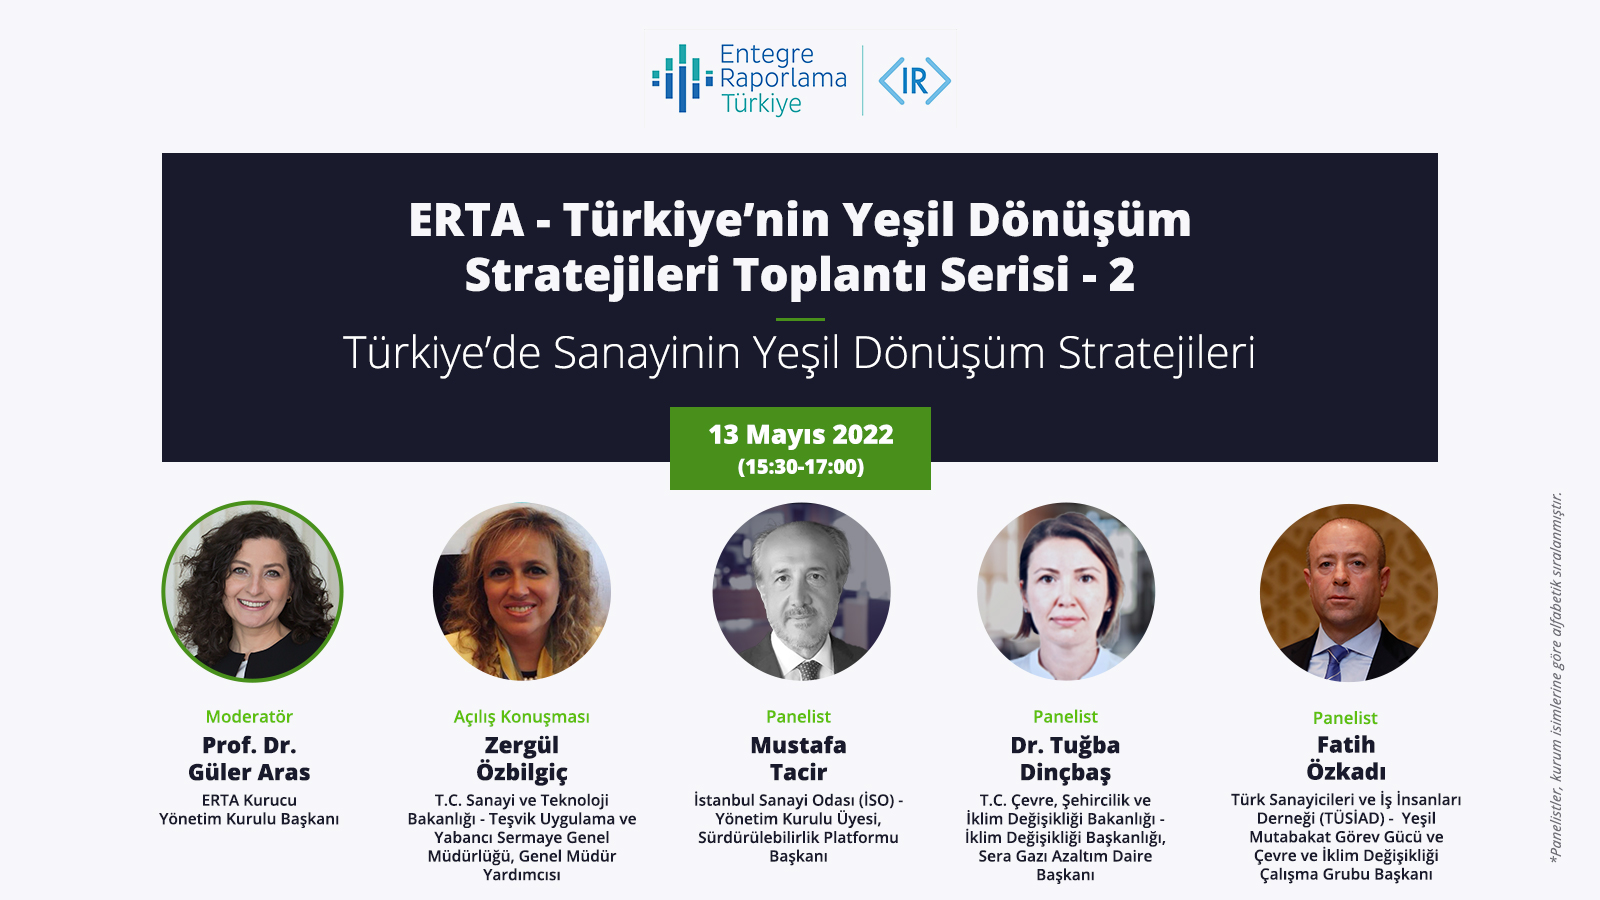 Türkiye’de Sanayinin Yeşil Dönüşüm Stratejileri - 2